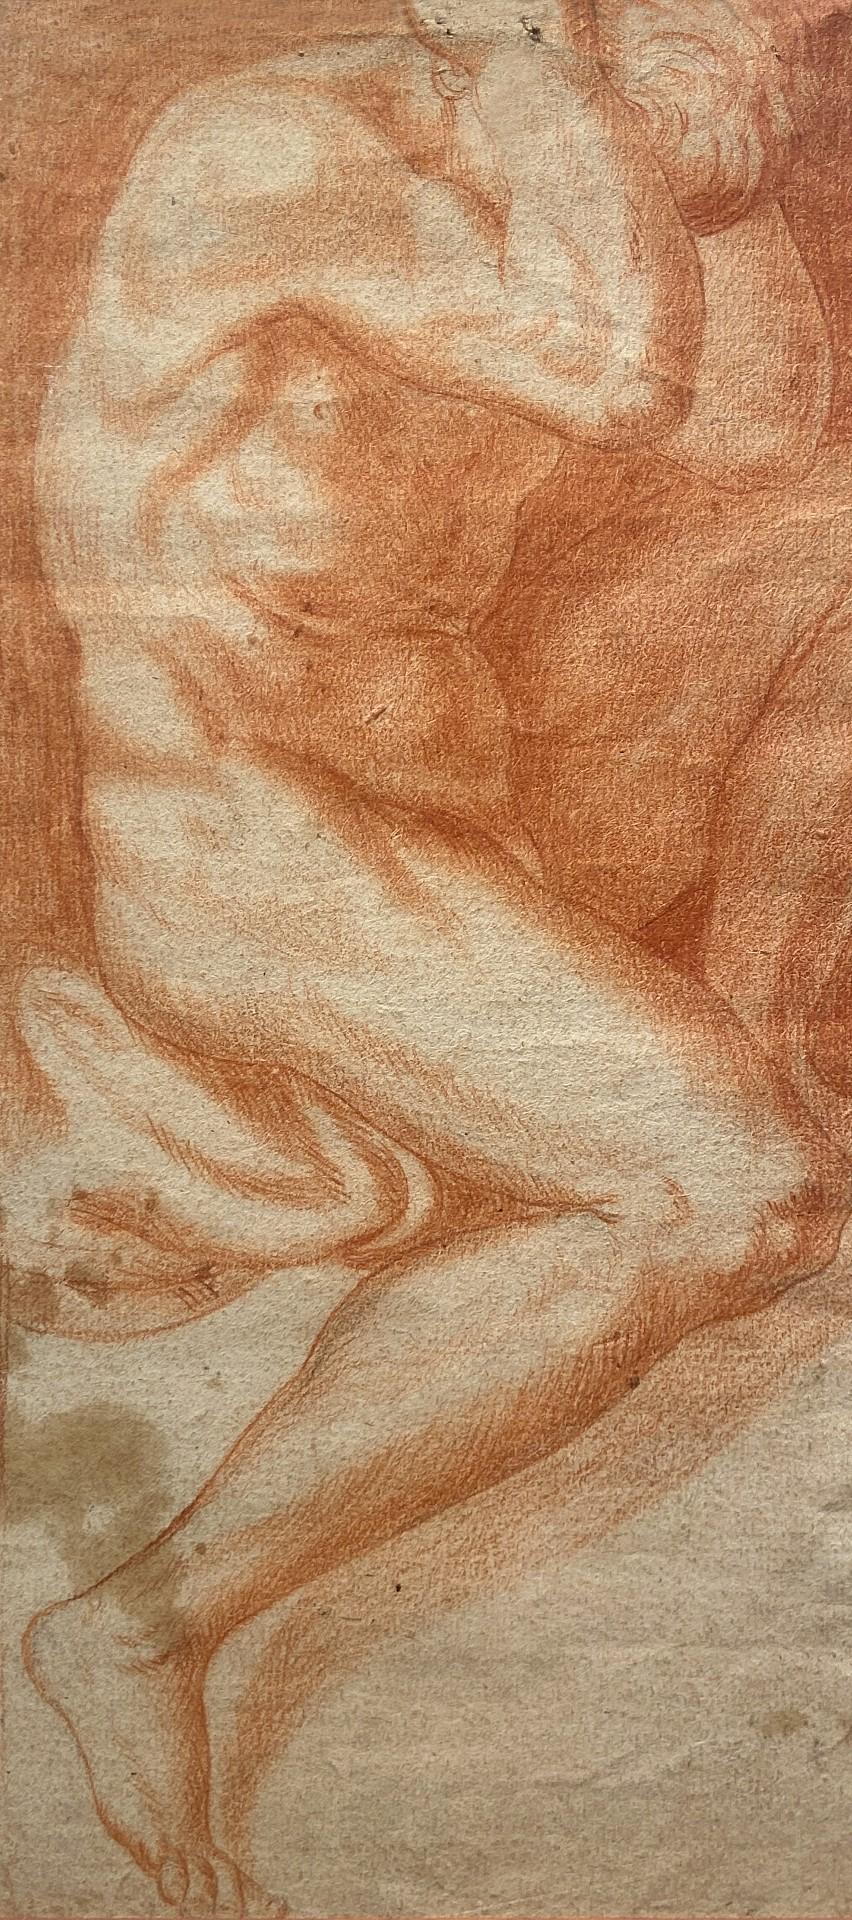 The Captive, Studie eines nackten Mannes, Rötelstudie, Carracci Gallery